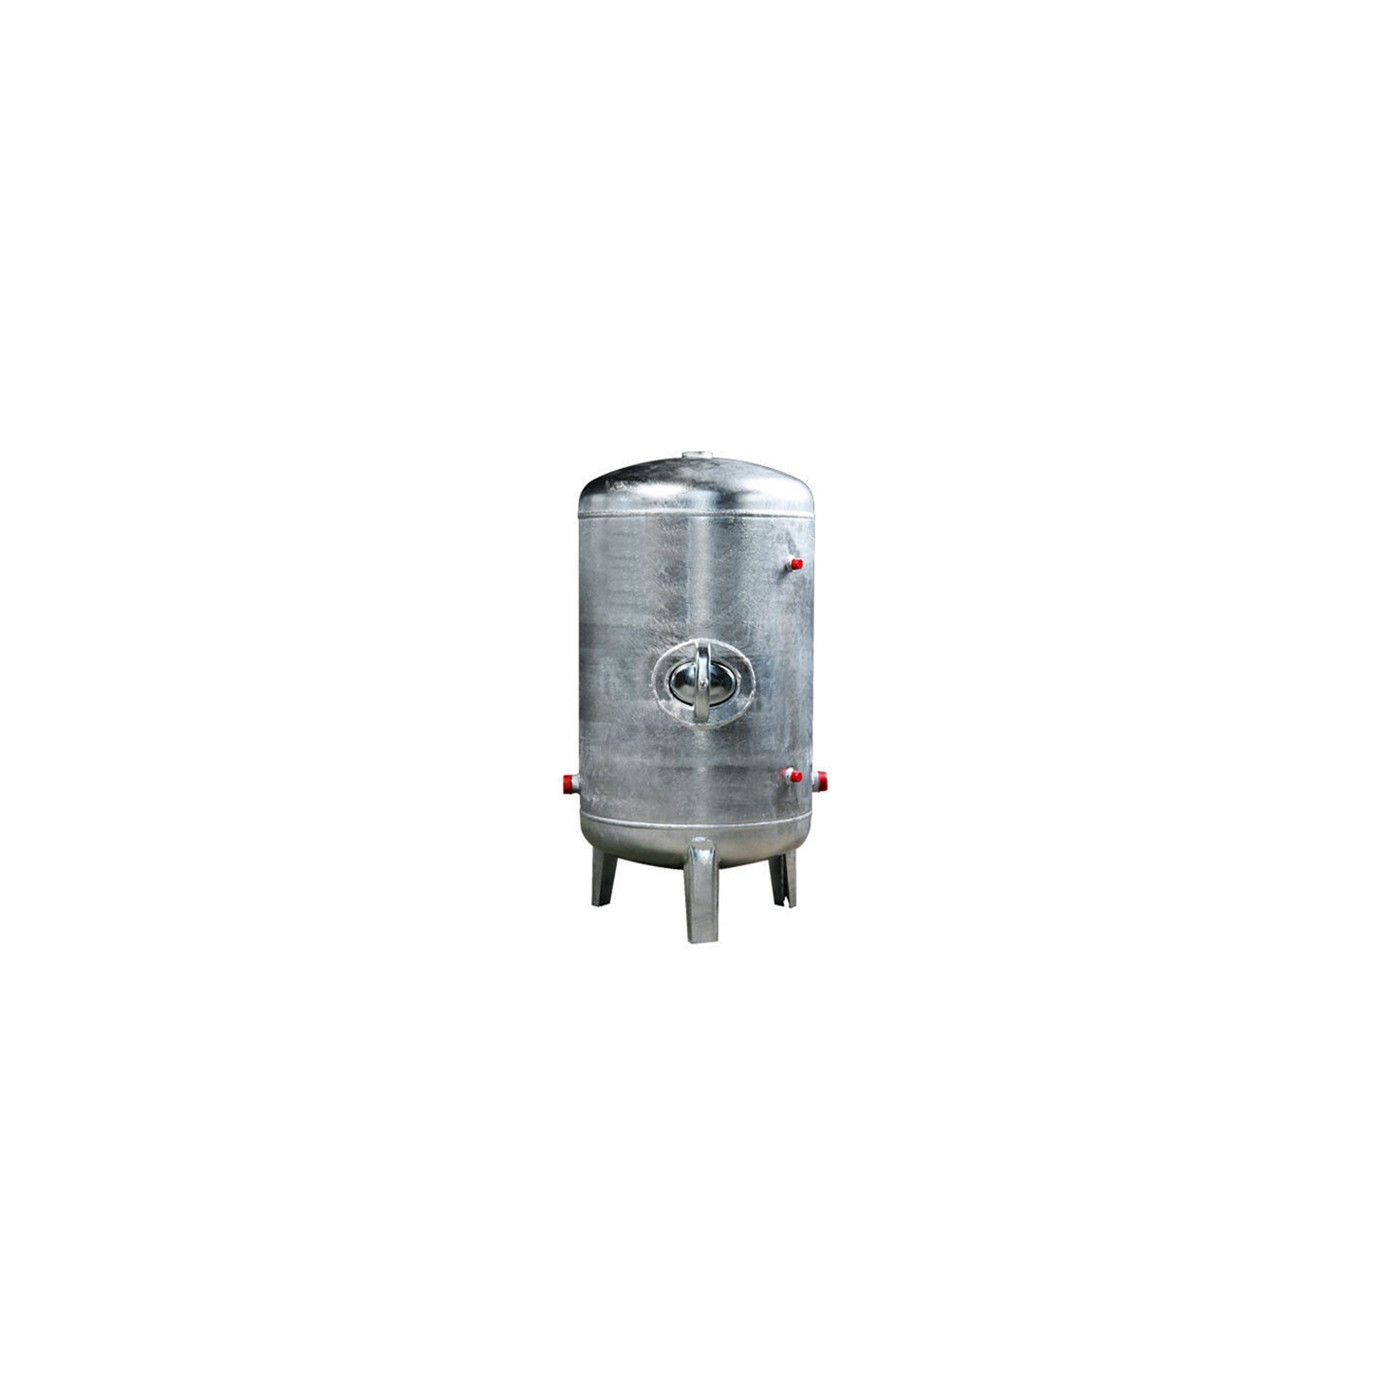 Druckbehälter 100 bis 500L 6 bar senkrecht verzinkt  Druckkessel verzinkt für Hauswasserwerk senkrecht